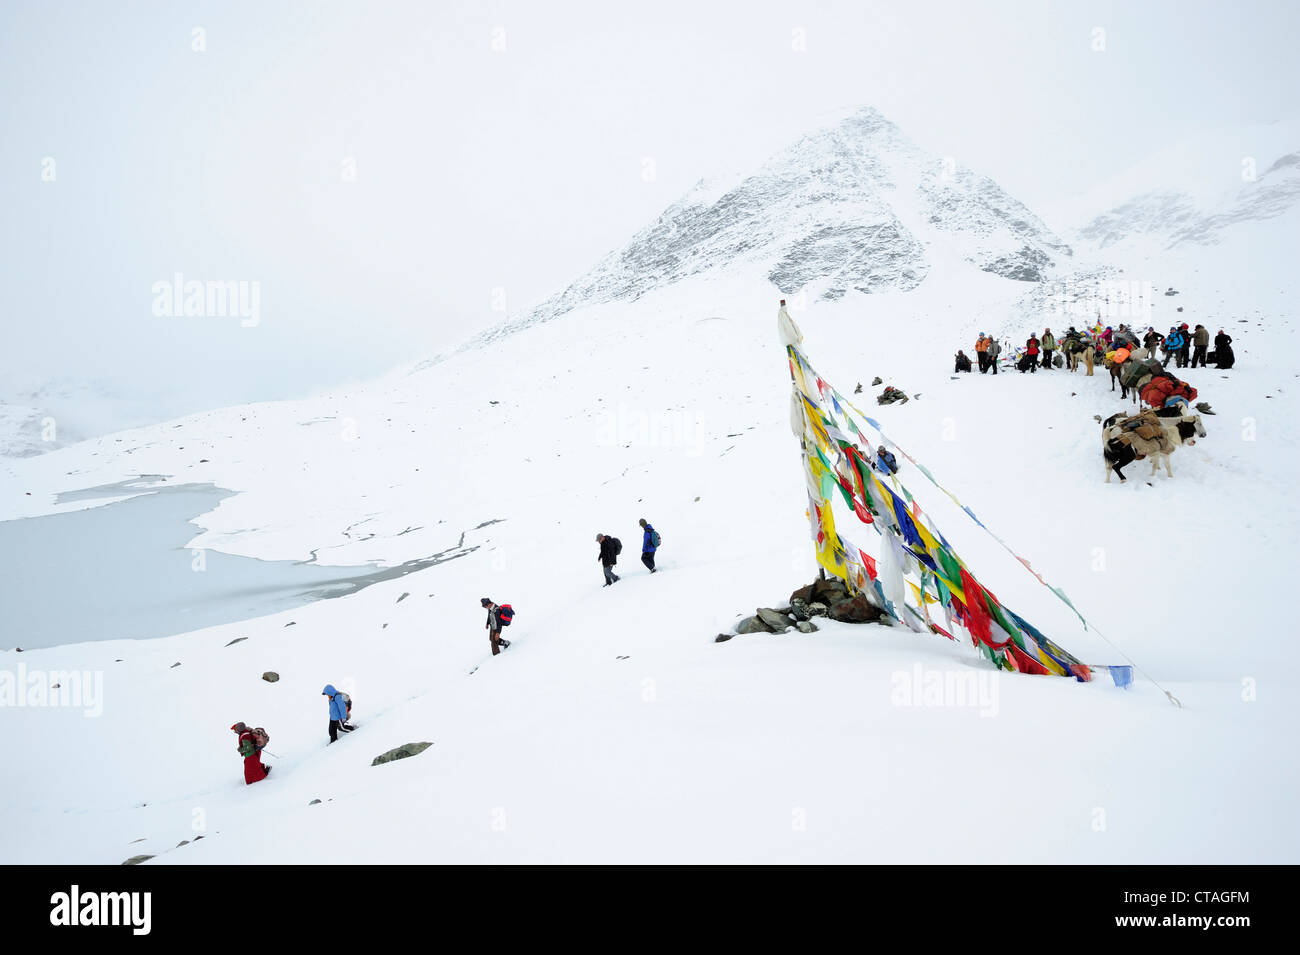 Monks, people and pack animals at snow-covered pass, Shingo La, Zanskar Range Traverse, Zanskar Range, Zanskar, Ladakh, India Stock Photo